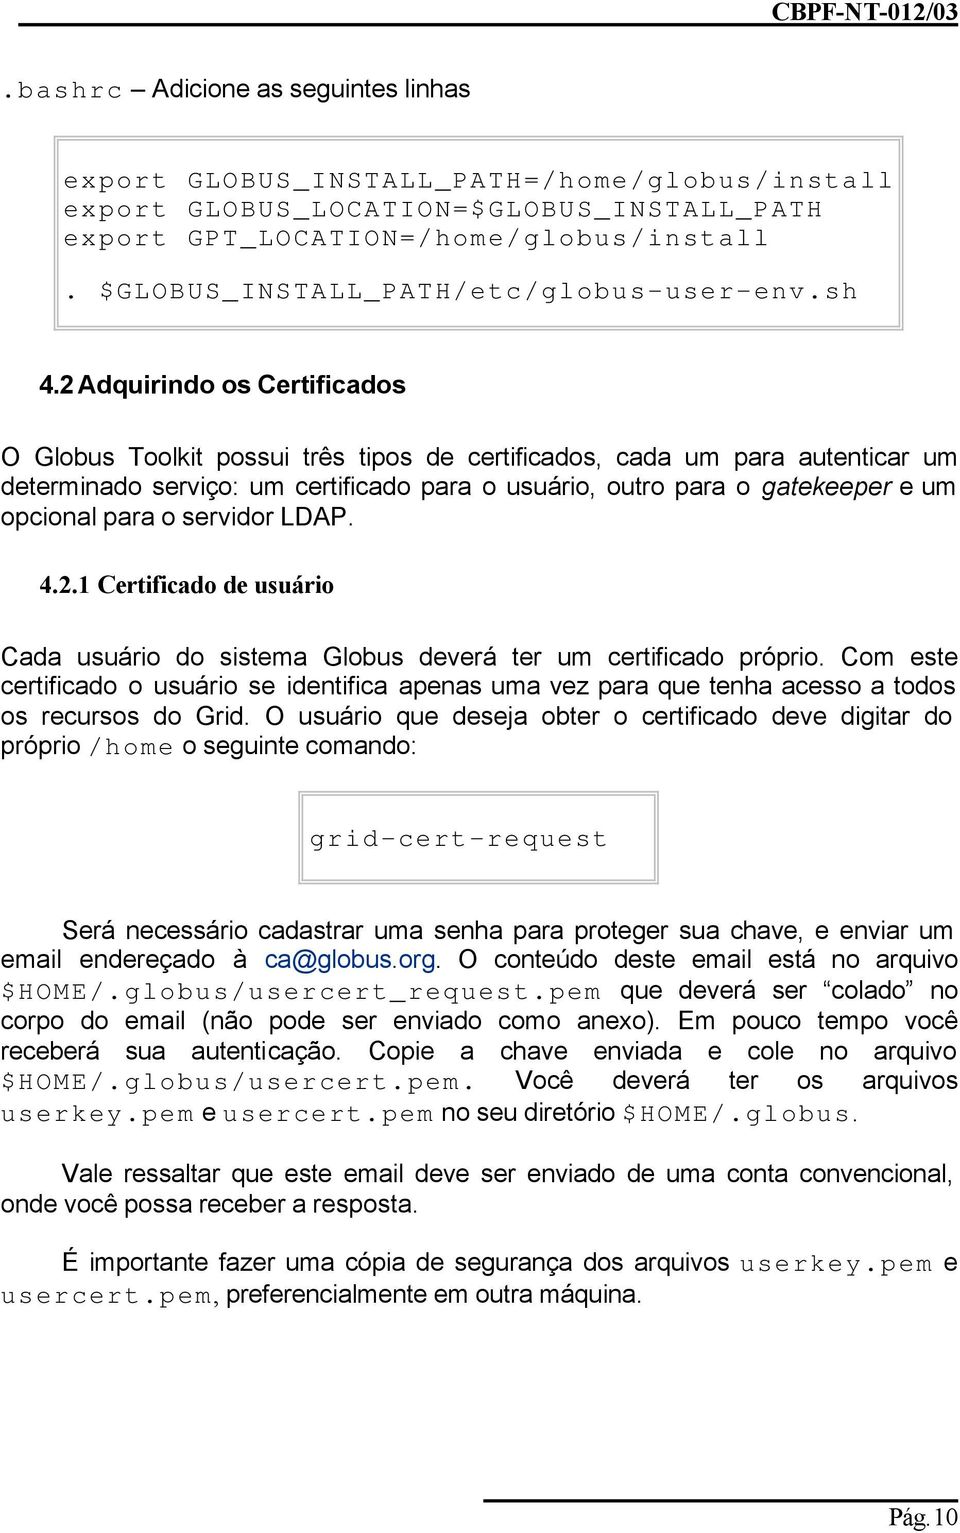 2 Adquirindo os Certificados O Globus Toolkit possui três tipos de certificados, cada um para autenticar um determinado serviço: um certificado para o usuário, outro para o gatekeeper e um opcional